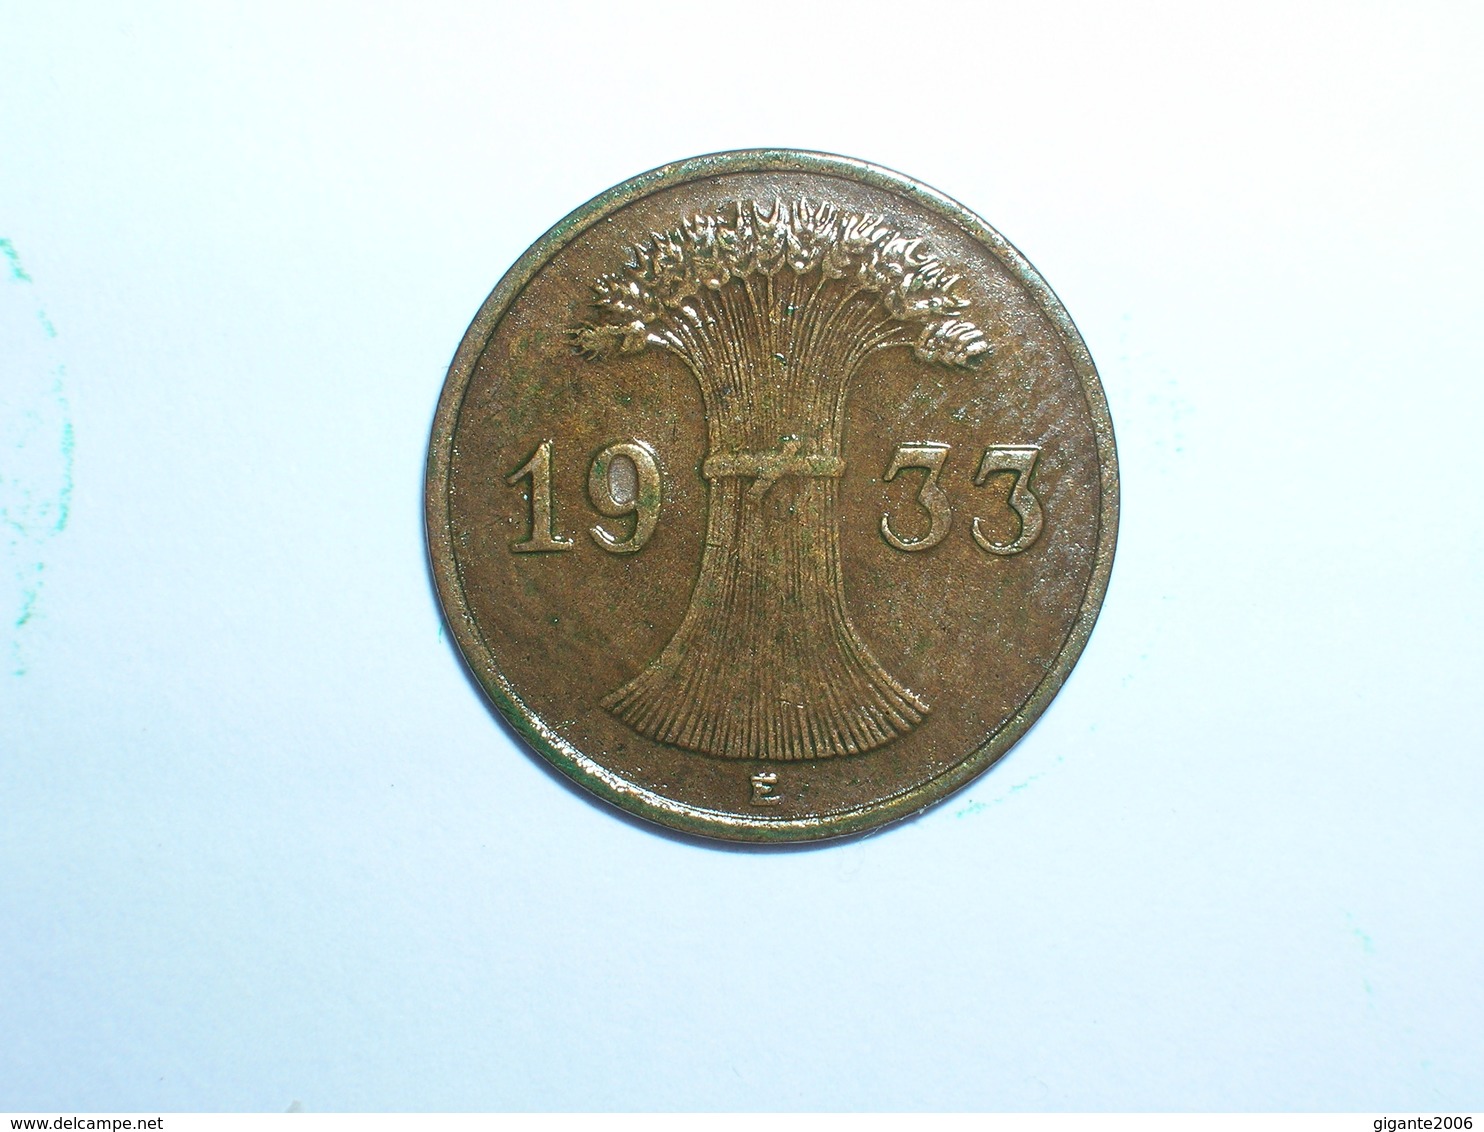 ALEMANIA 1 REICHPFENNIG 1933 E (1144) - 1 Reichspfennig